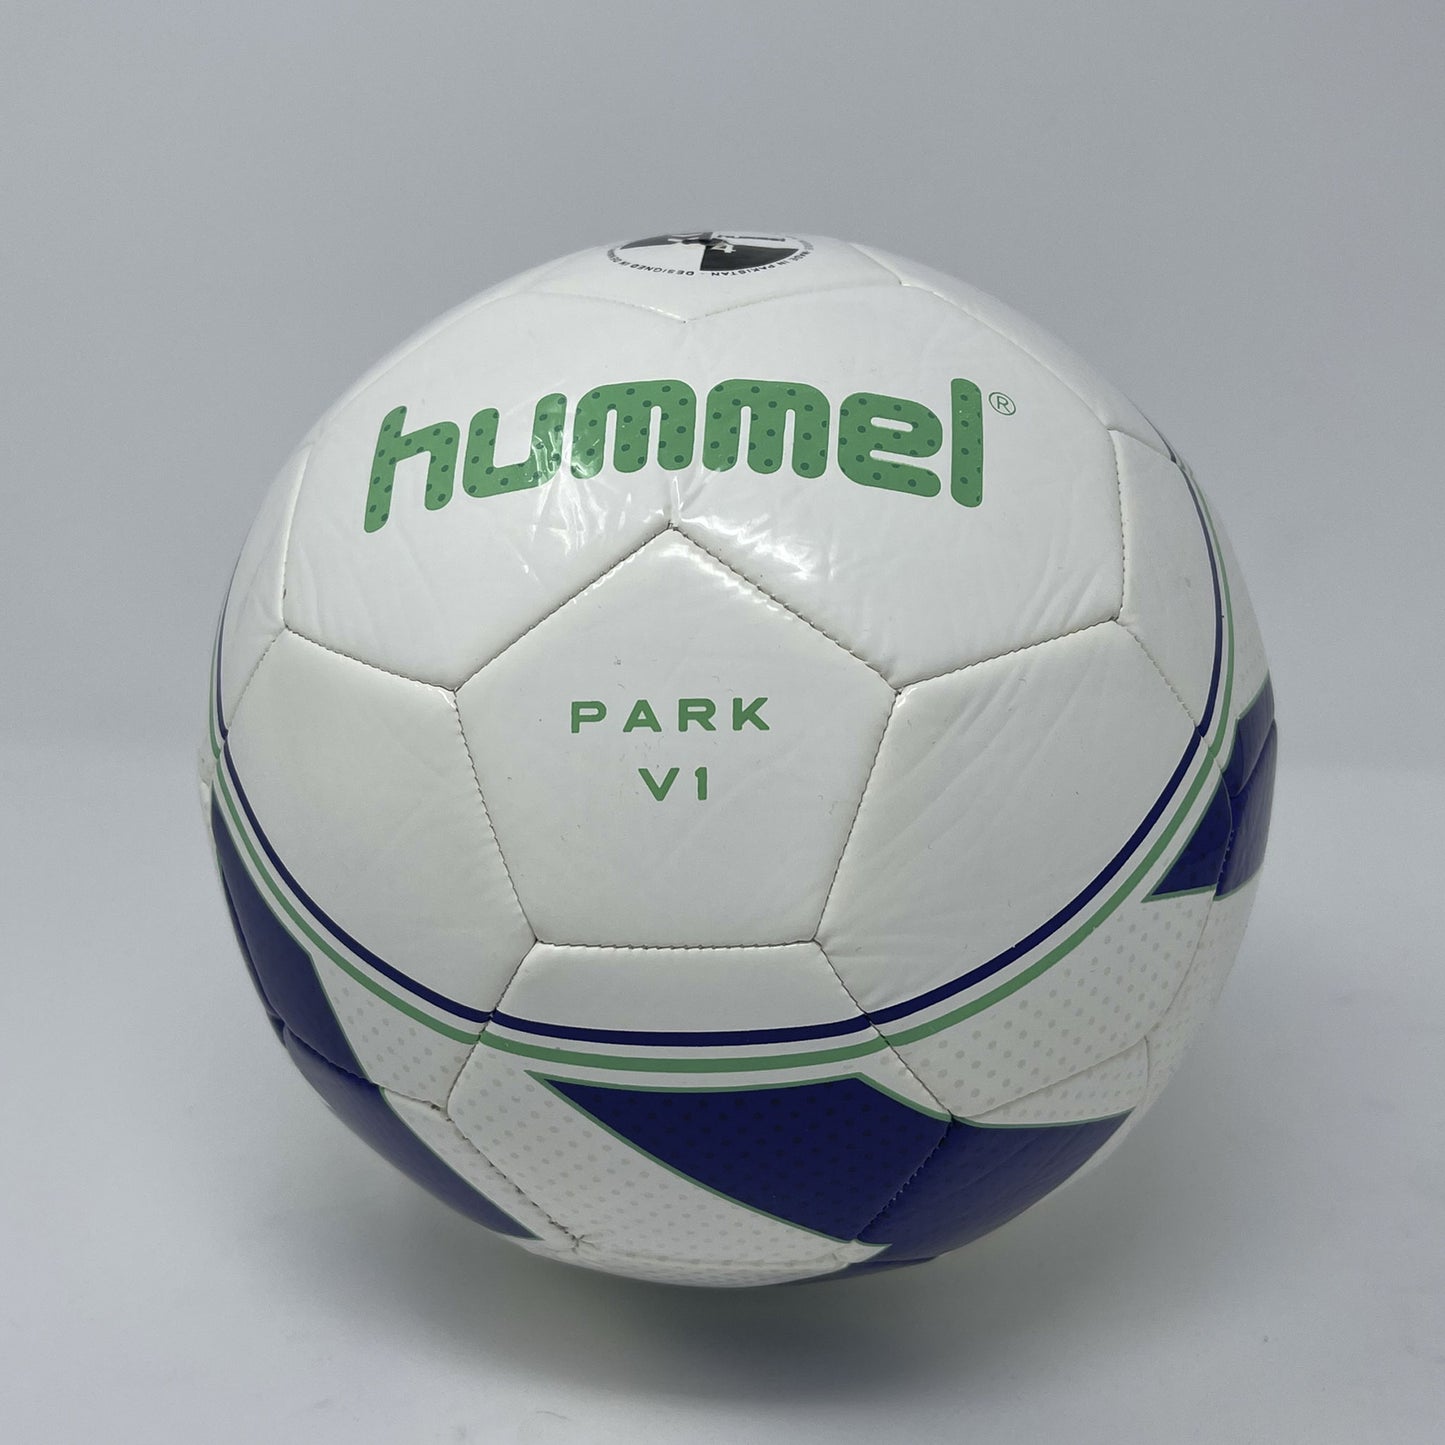 Hummel Park Soccer Ball - Size 4